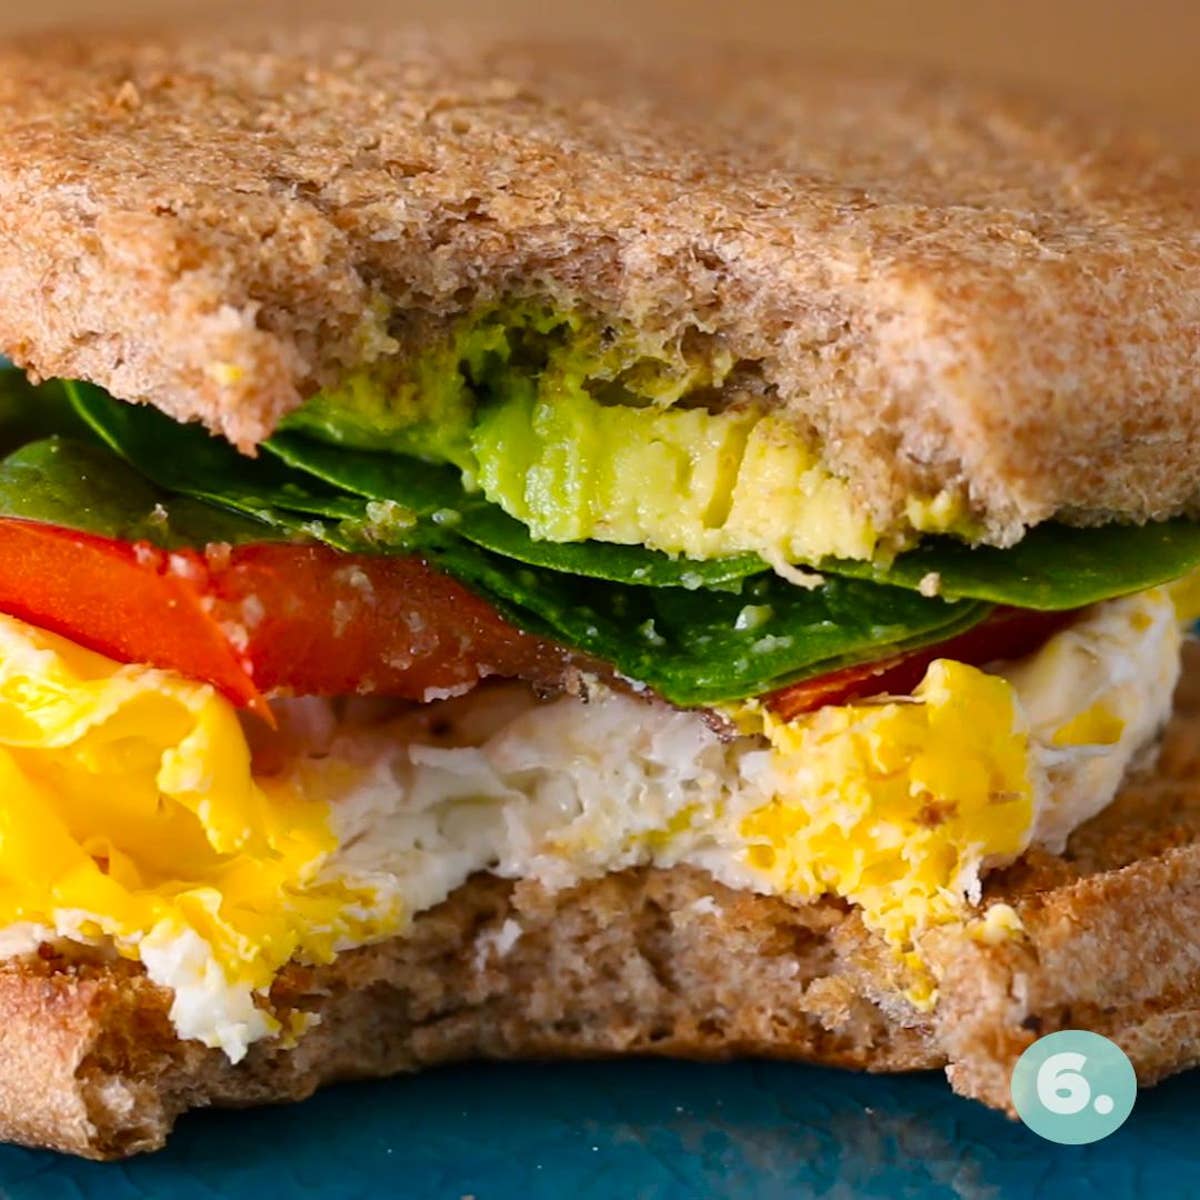 Microwaved Egg Breakfast Sandwich